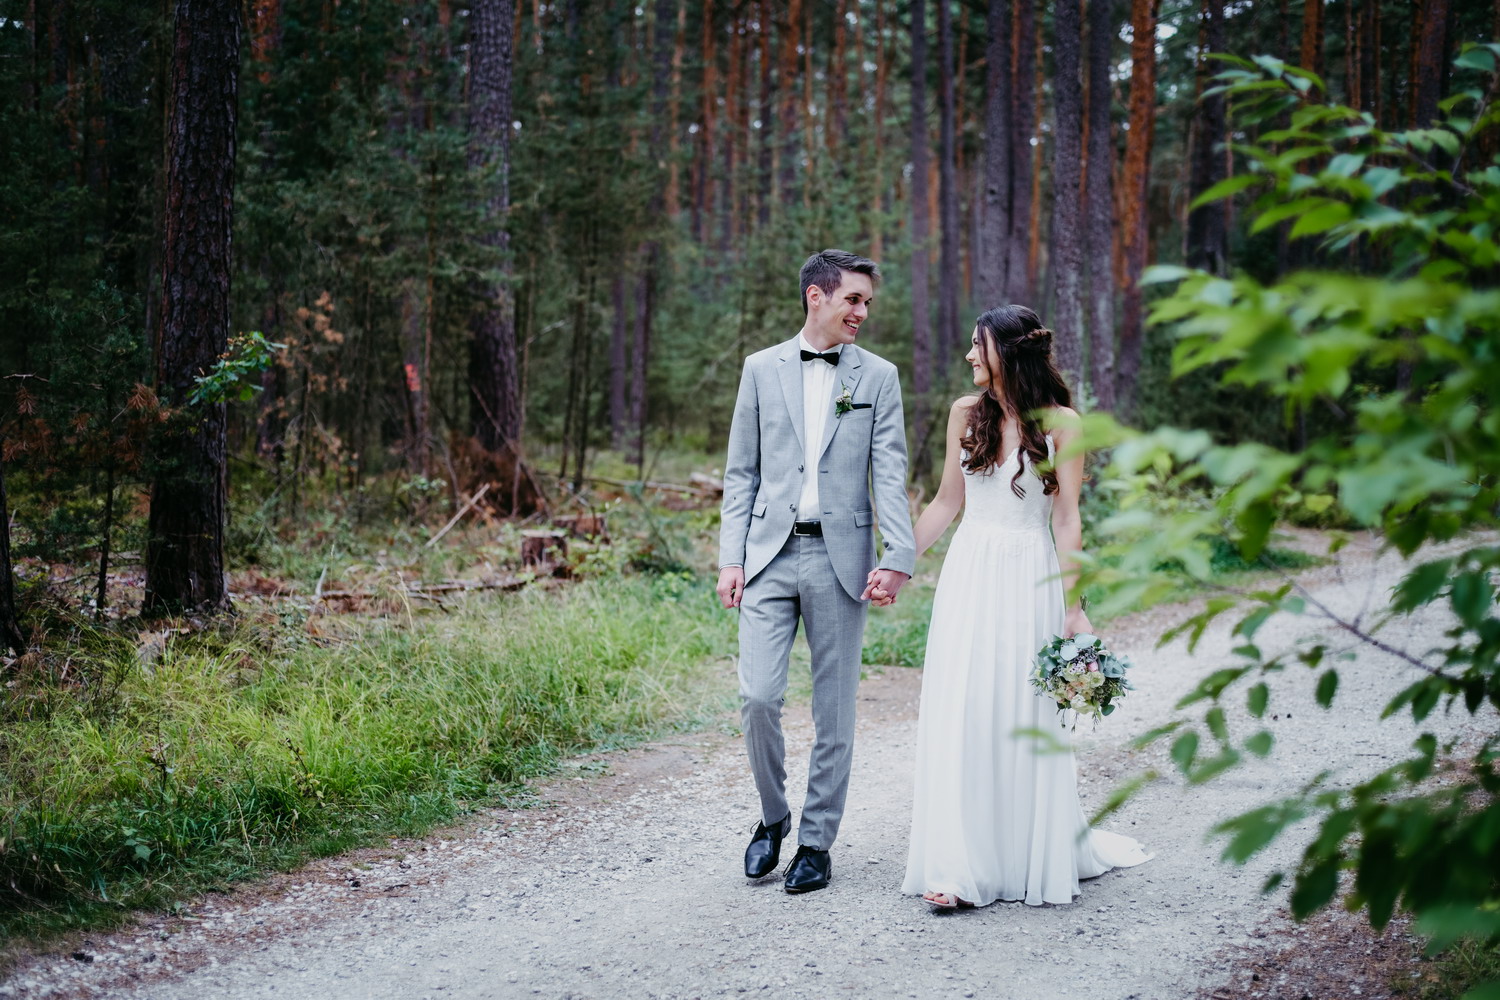 Tolle Hochzeitsbilder mit dem Hochzeits Fotografen aus Nuernberg